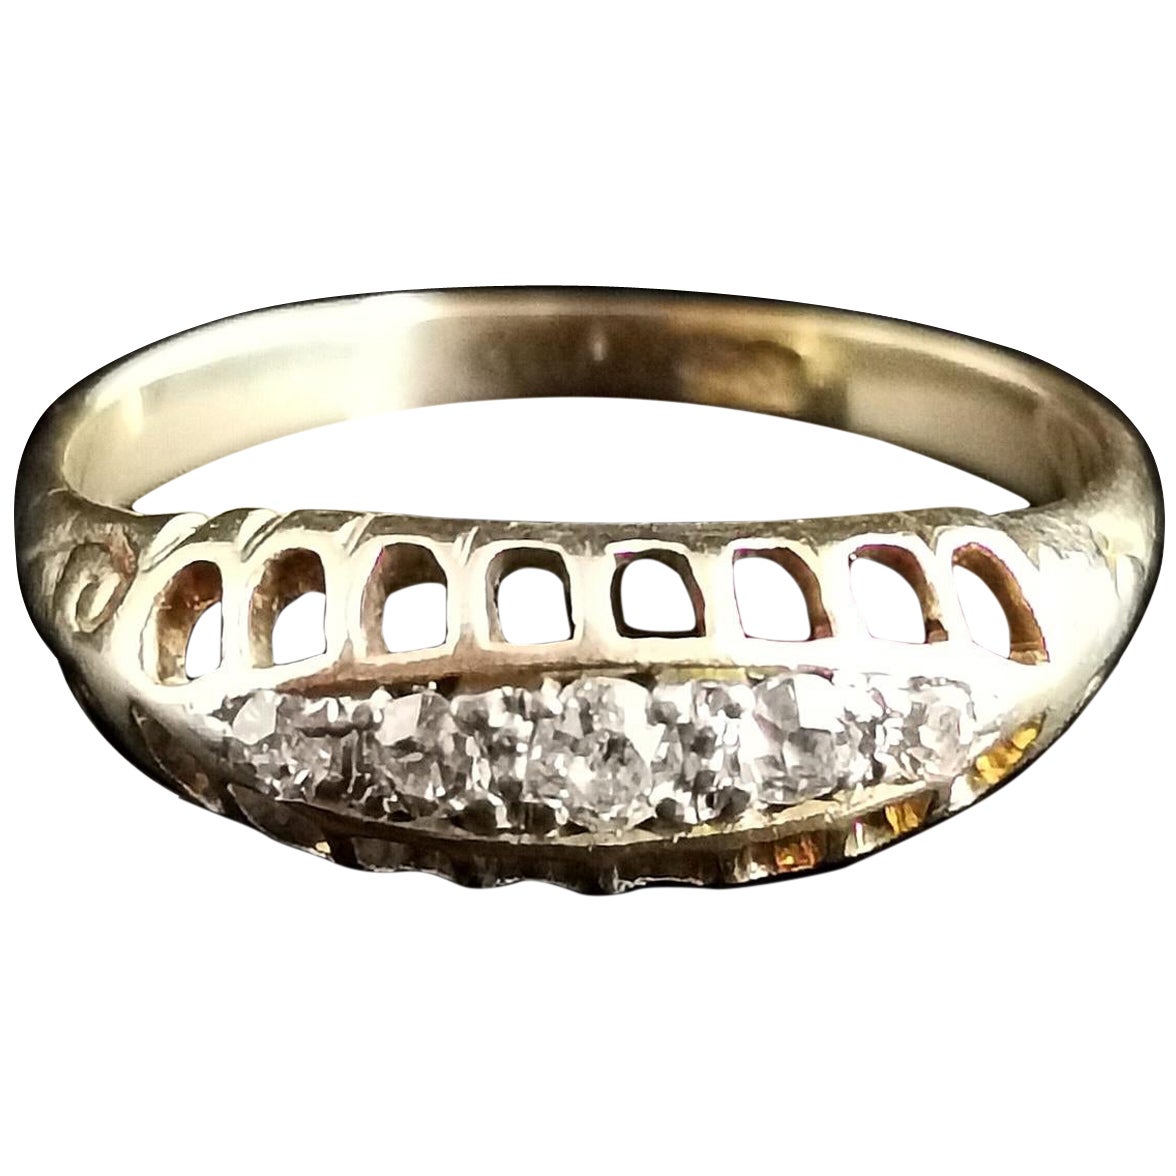 Ein schöner antiker Diamantring mit fünf Steinen.

Es handelt sich um einen Ring im Bootskopf-Stil, der mit sechs einzelnen Diamanten im Altschliff besetzt ist, die in ihrer Größe abgestuft sind, wobei der Mittelstein der größte ist.

Es hat eine